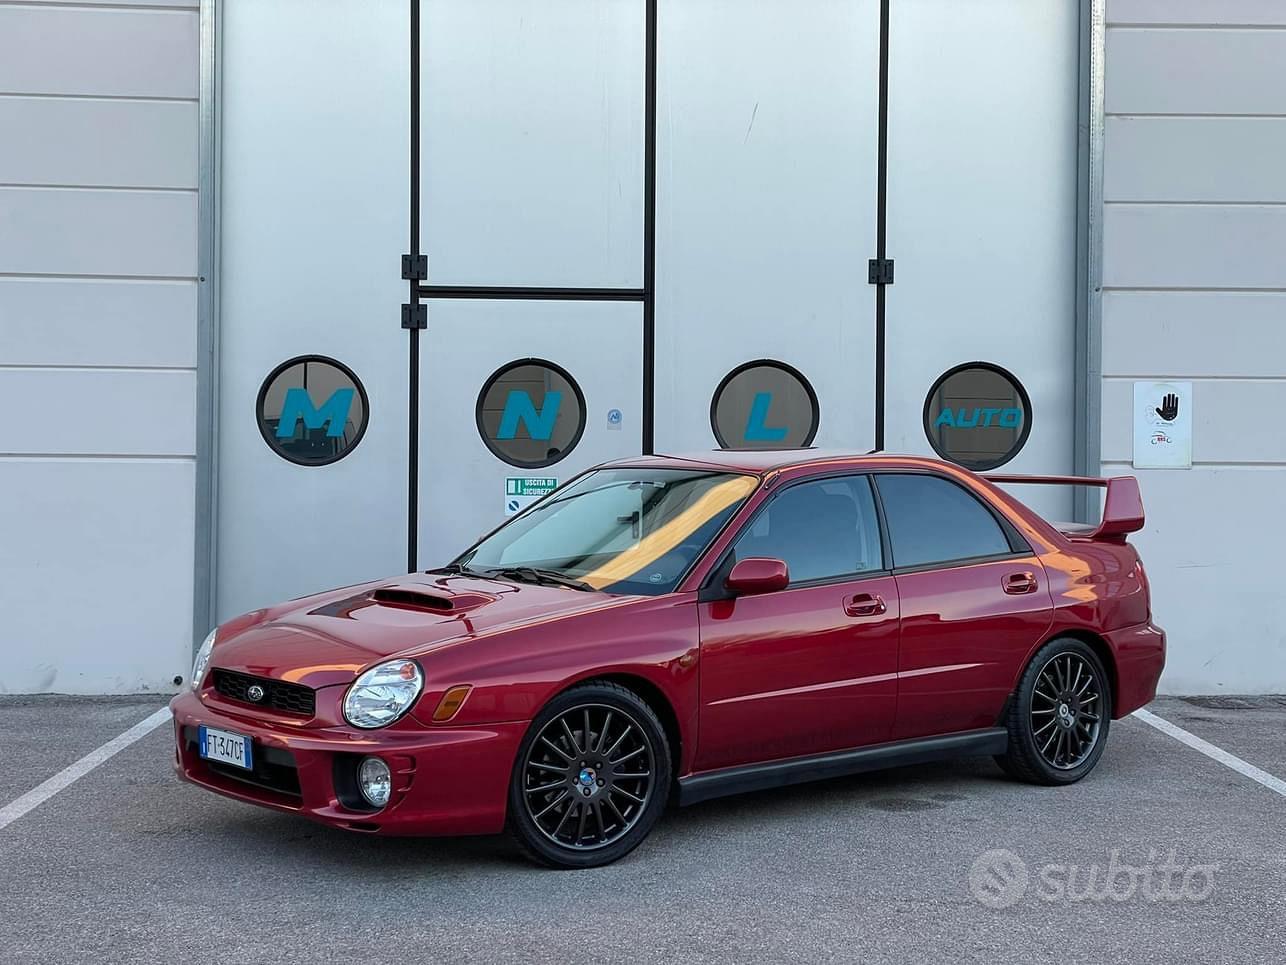 Subito - MNL AUTO - Subaru impreza wrx 10/41 edition - Auto In vendita a  Pordenone